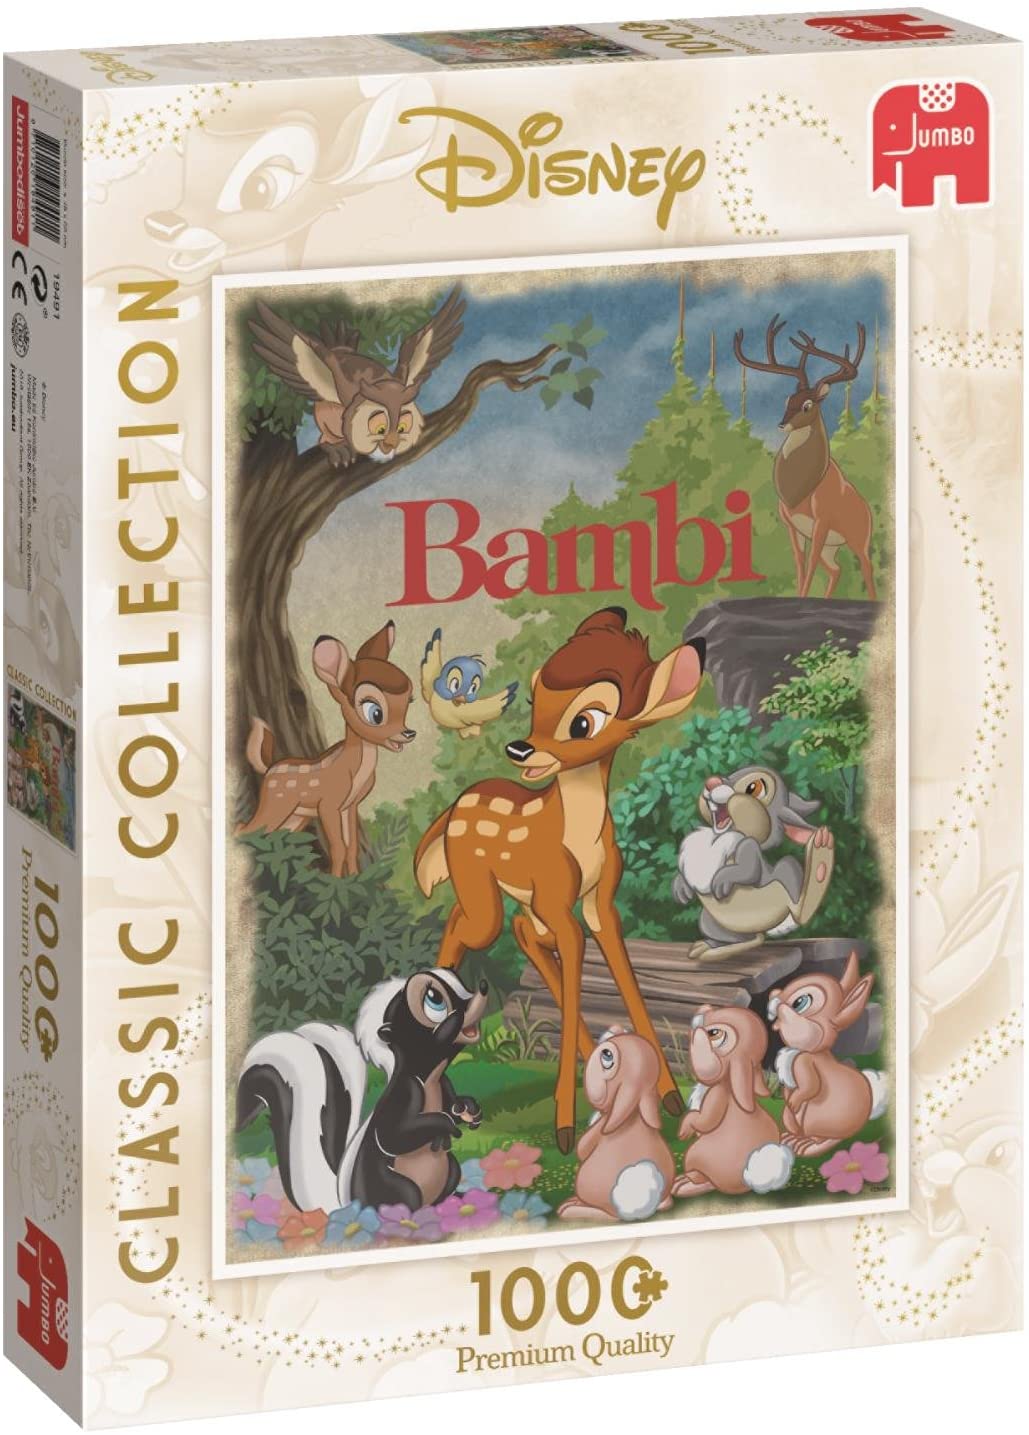 Bambi van Disney, puzzel van 1000 stukjes